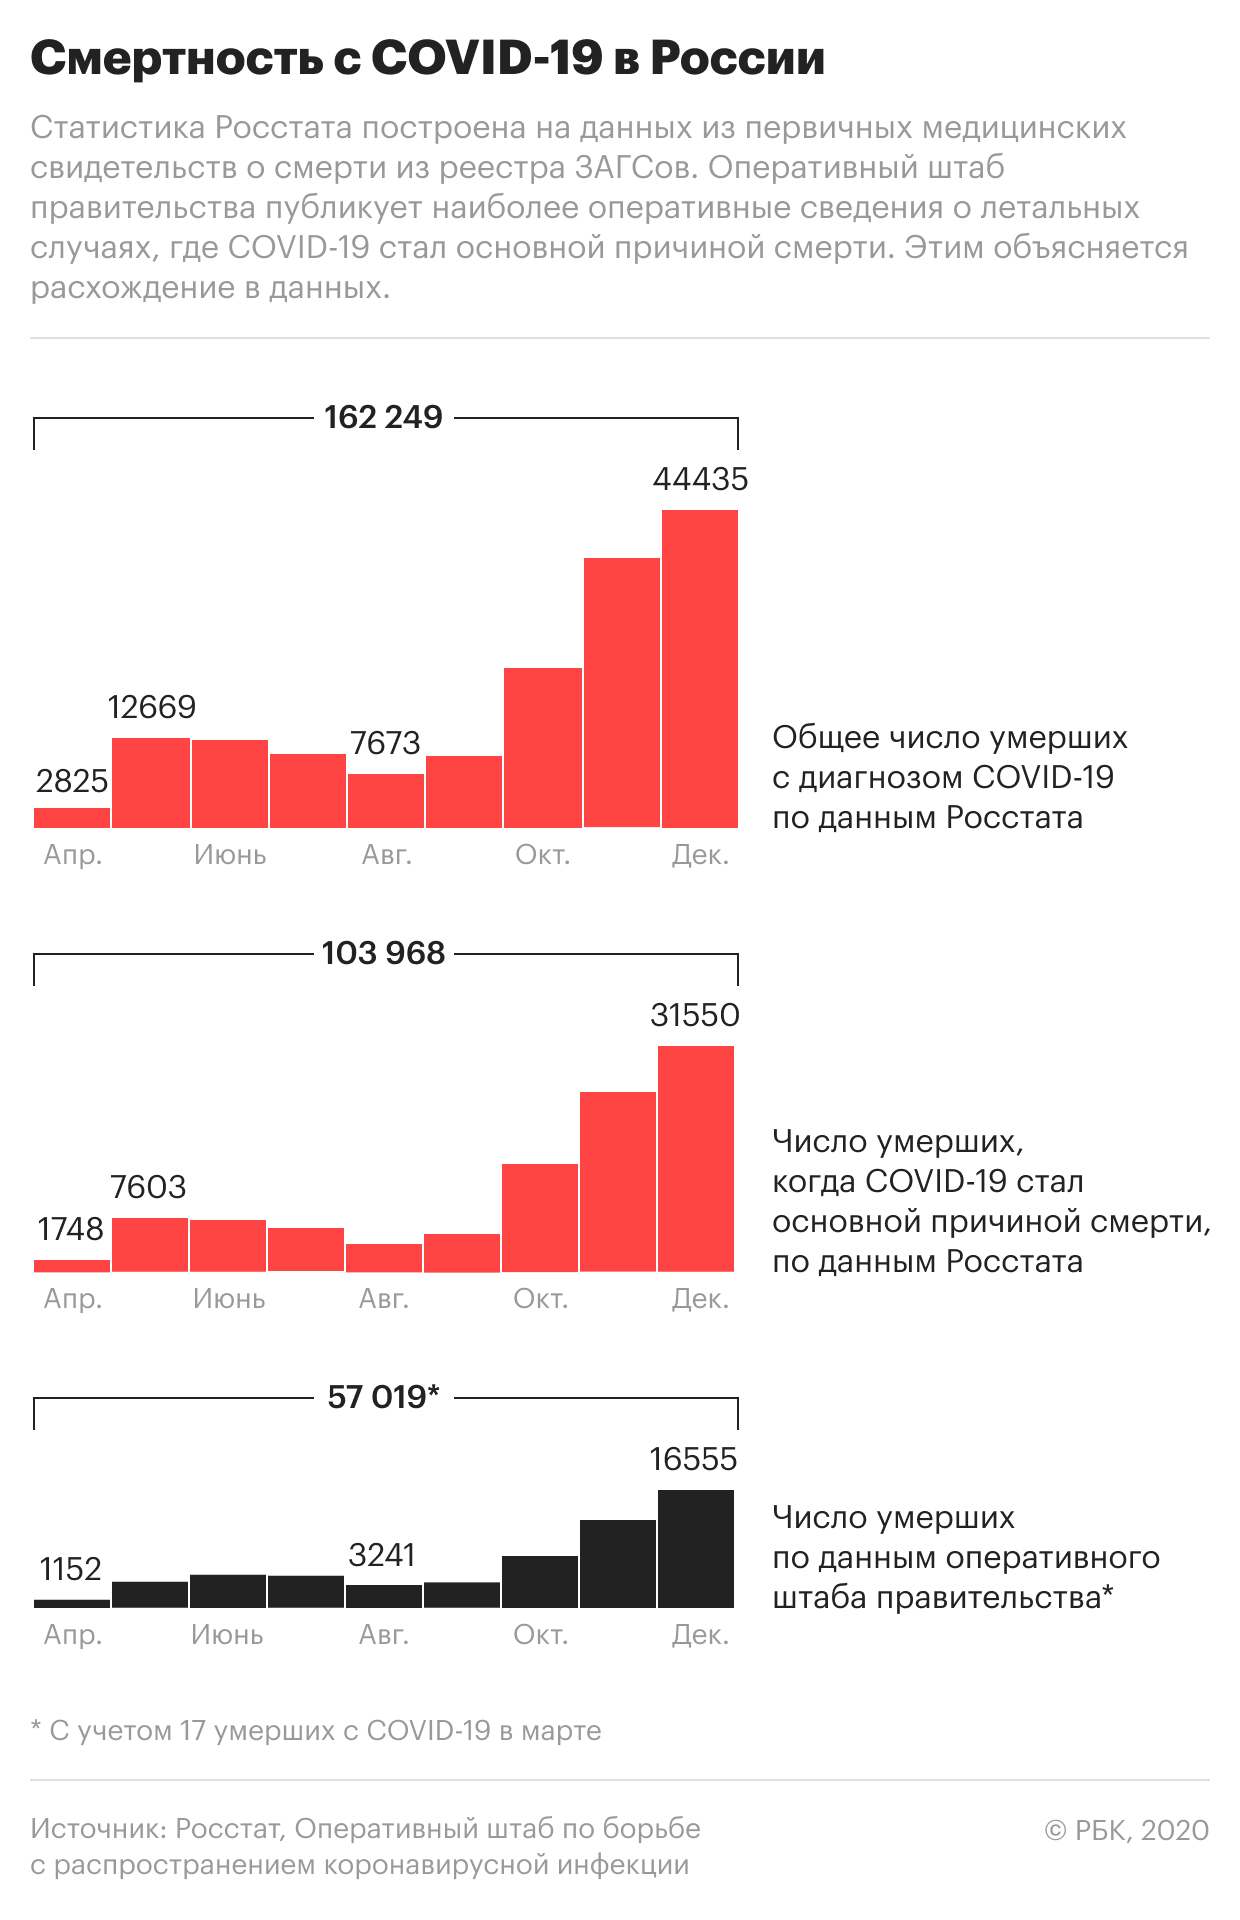 Как менялось число смертей с COVID-19 в России в 2020 году. Инфографика